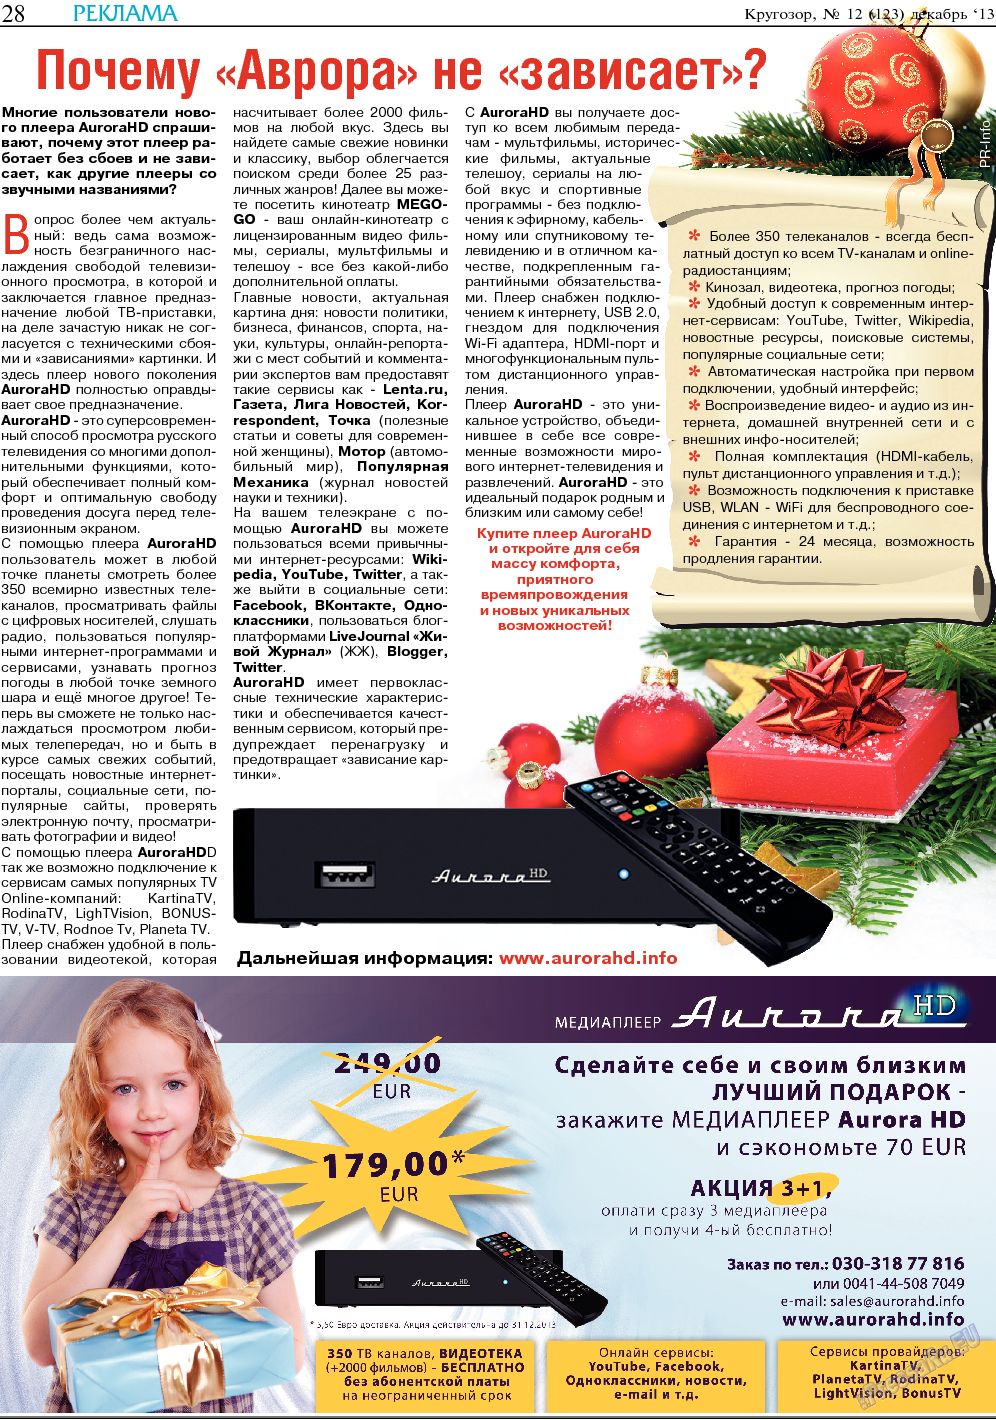 Кругозор, газета. 2013 №12 стр.28